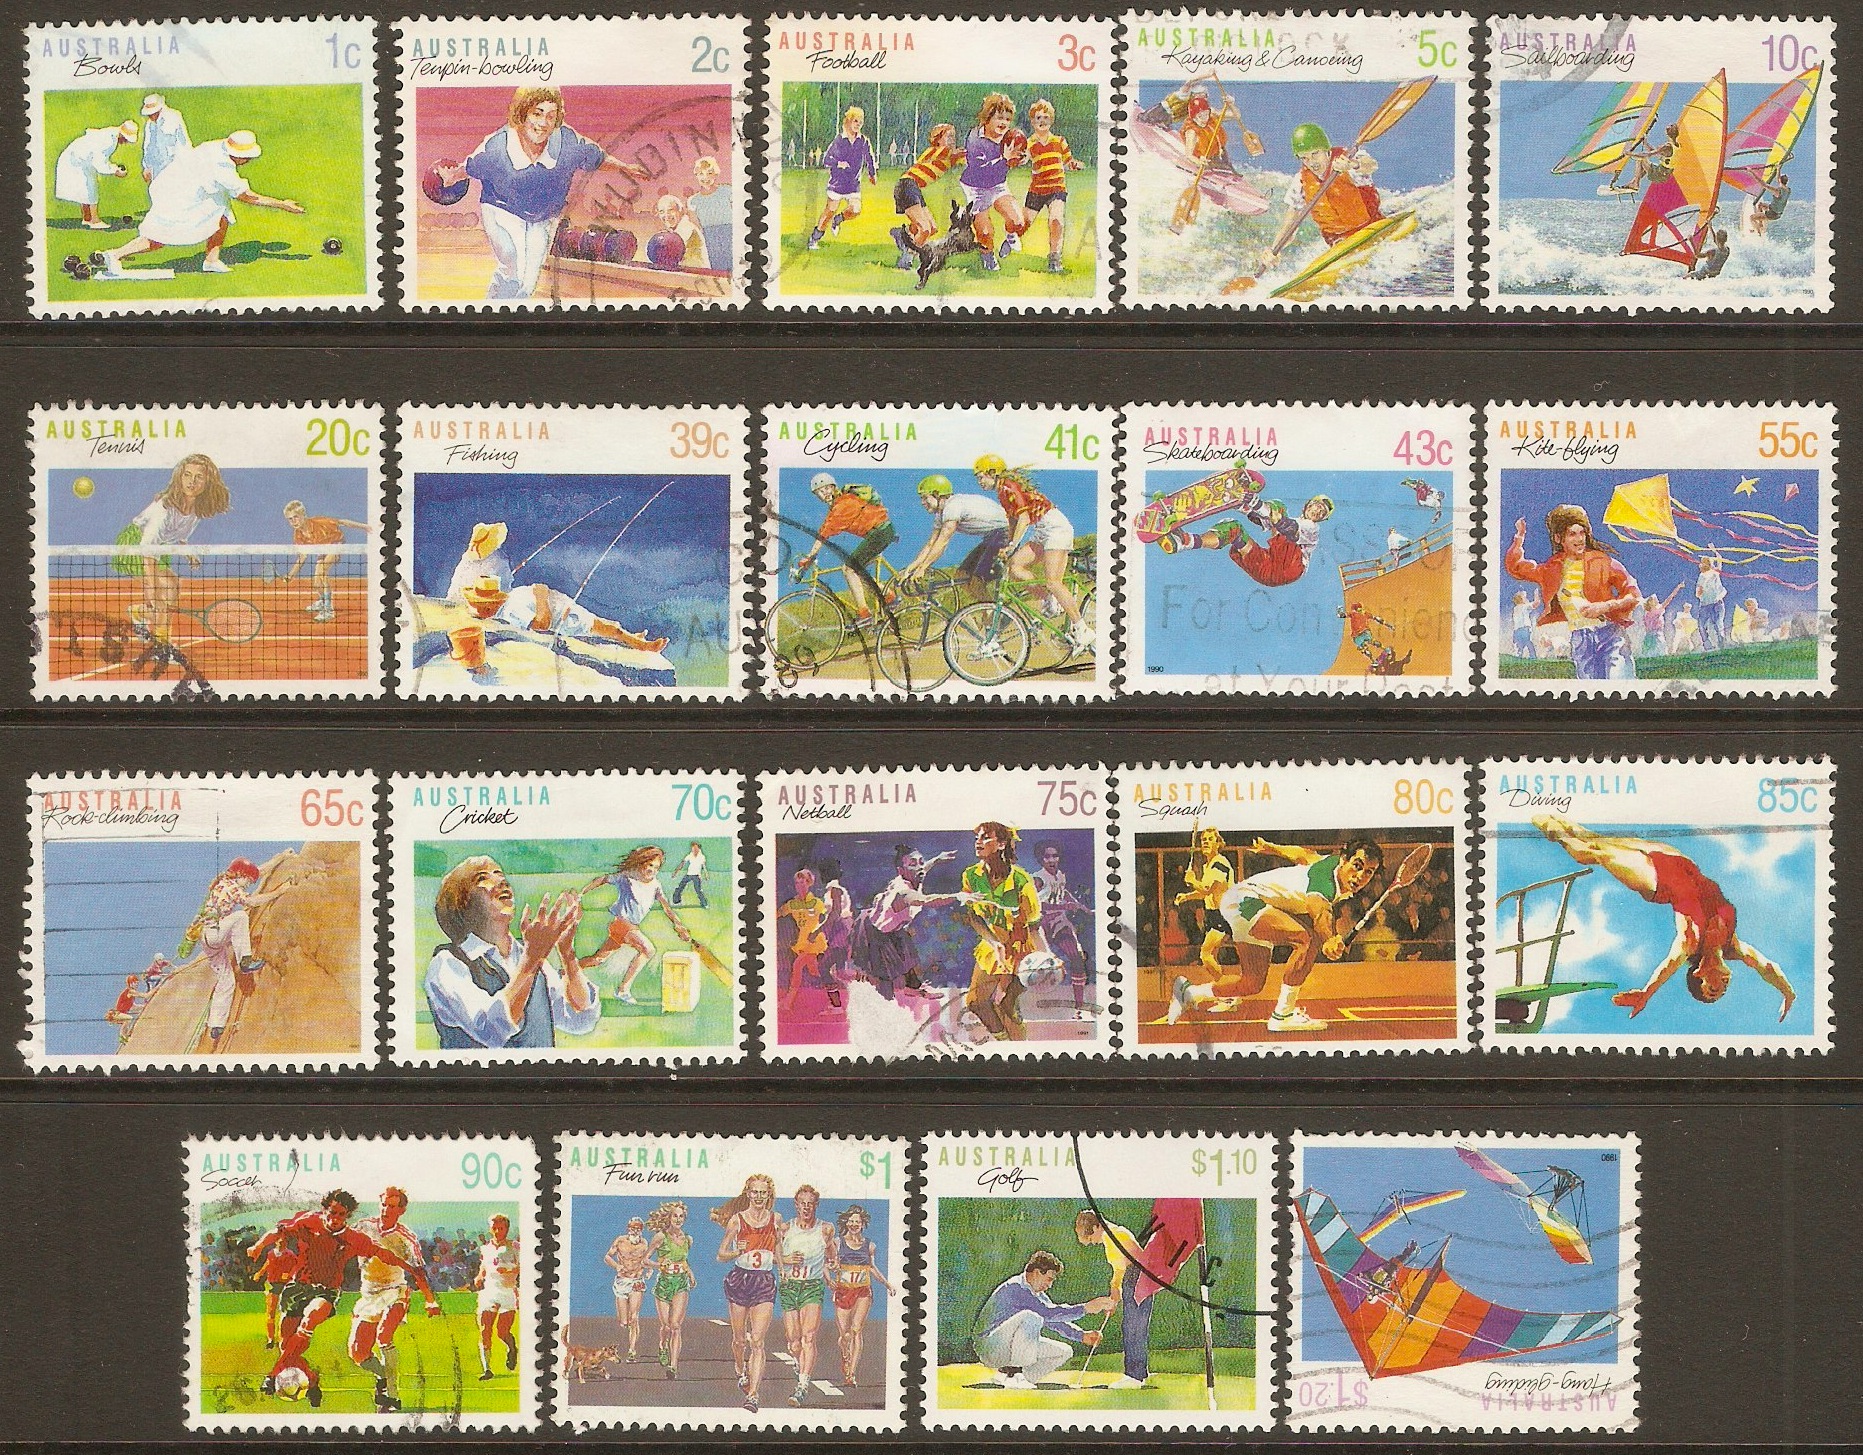 Australia 1989 Sports set. SG1169-SG1194.